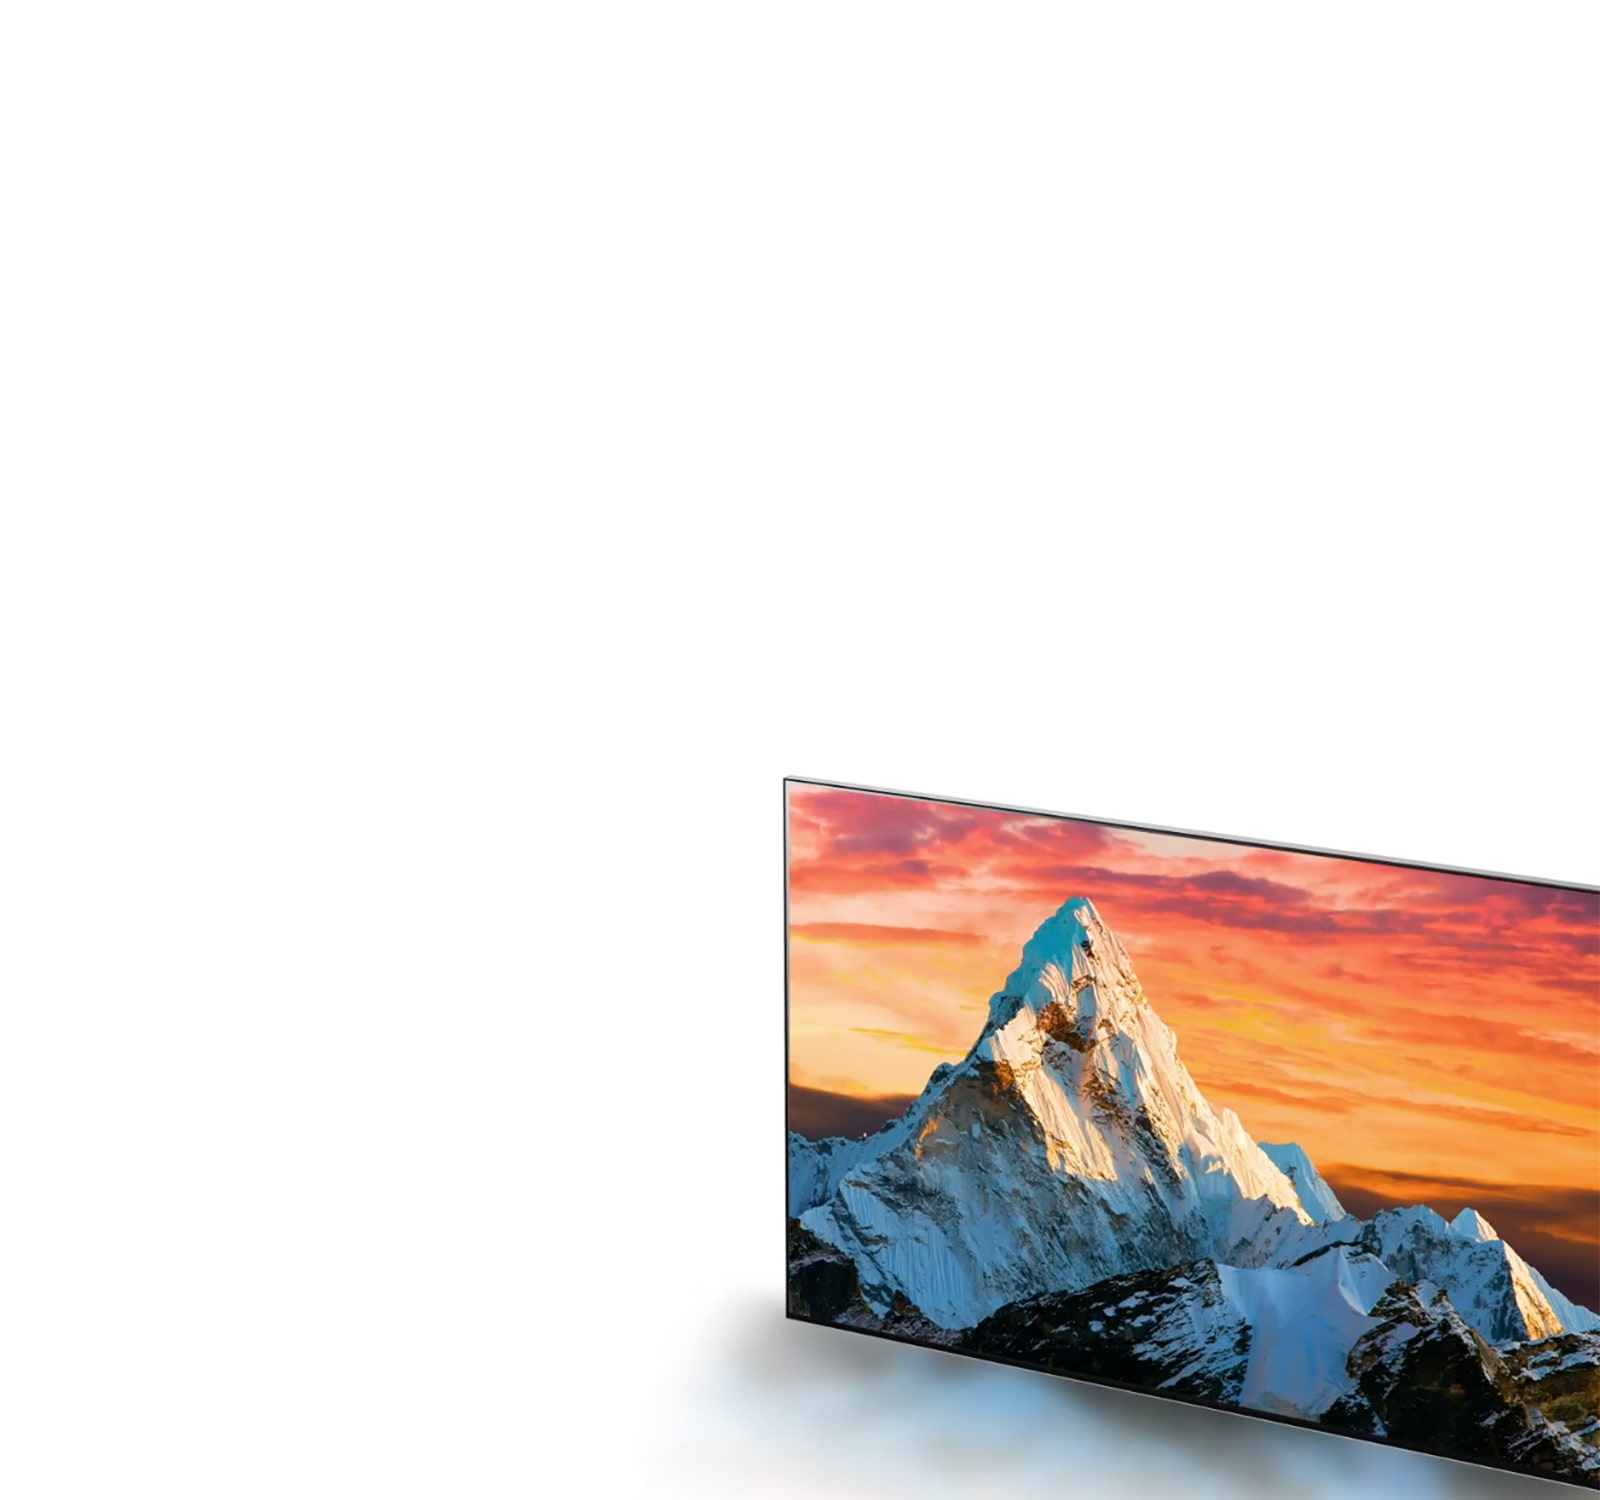 Televizní obrazovka s horou proti oranžovému západu slunce se zvětšuje a zároveň se zvyšuje zřetelnost detailů (přehrát video).